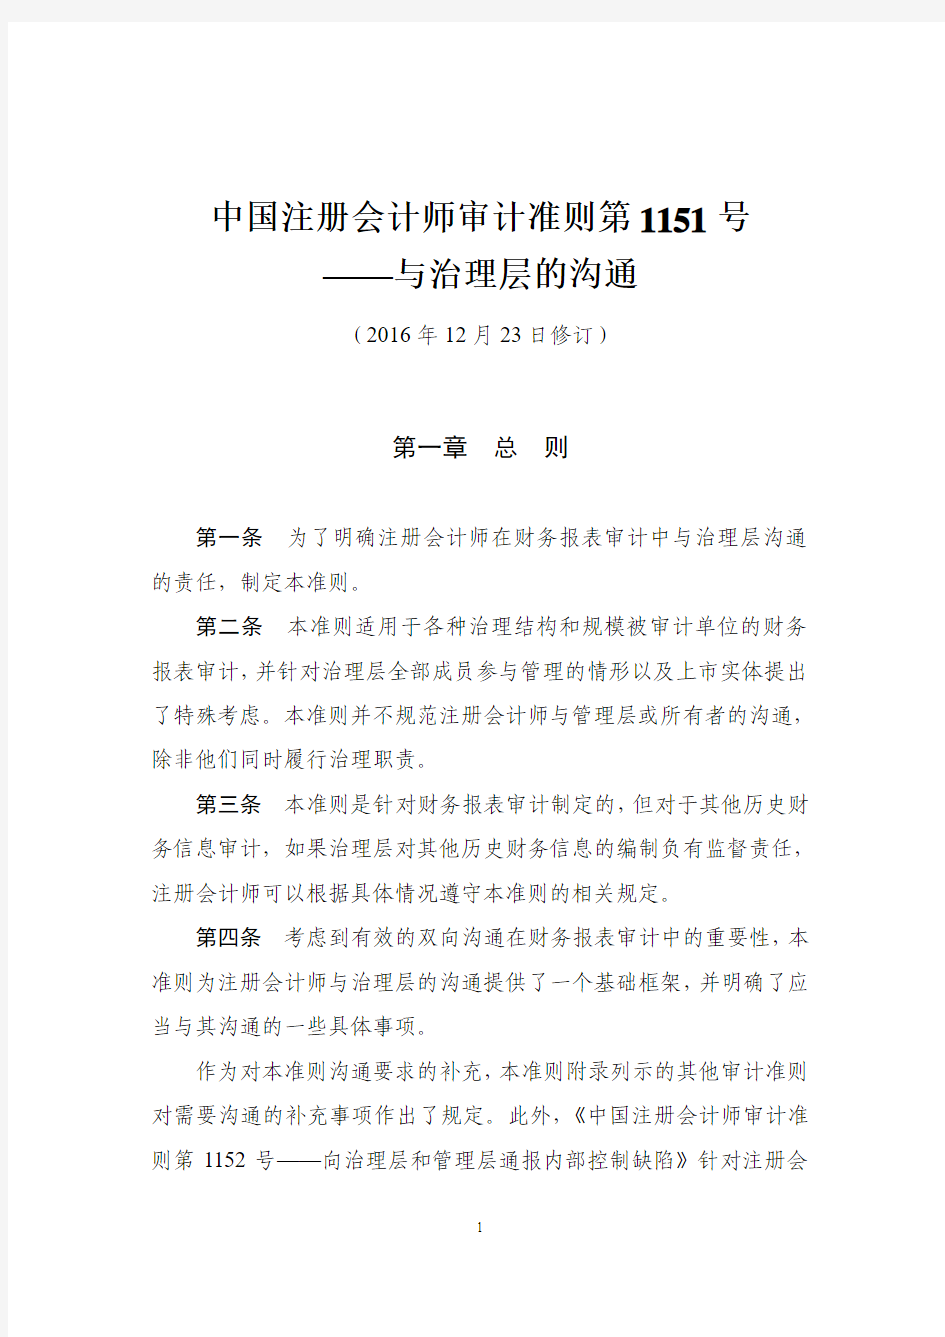 2.5. 中国注册会计师审计准则第1151号——与治理层的沟通